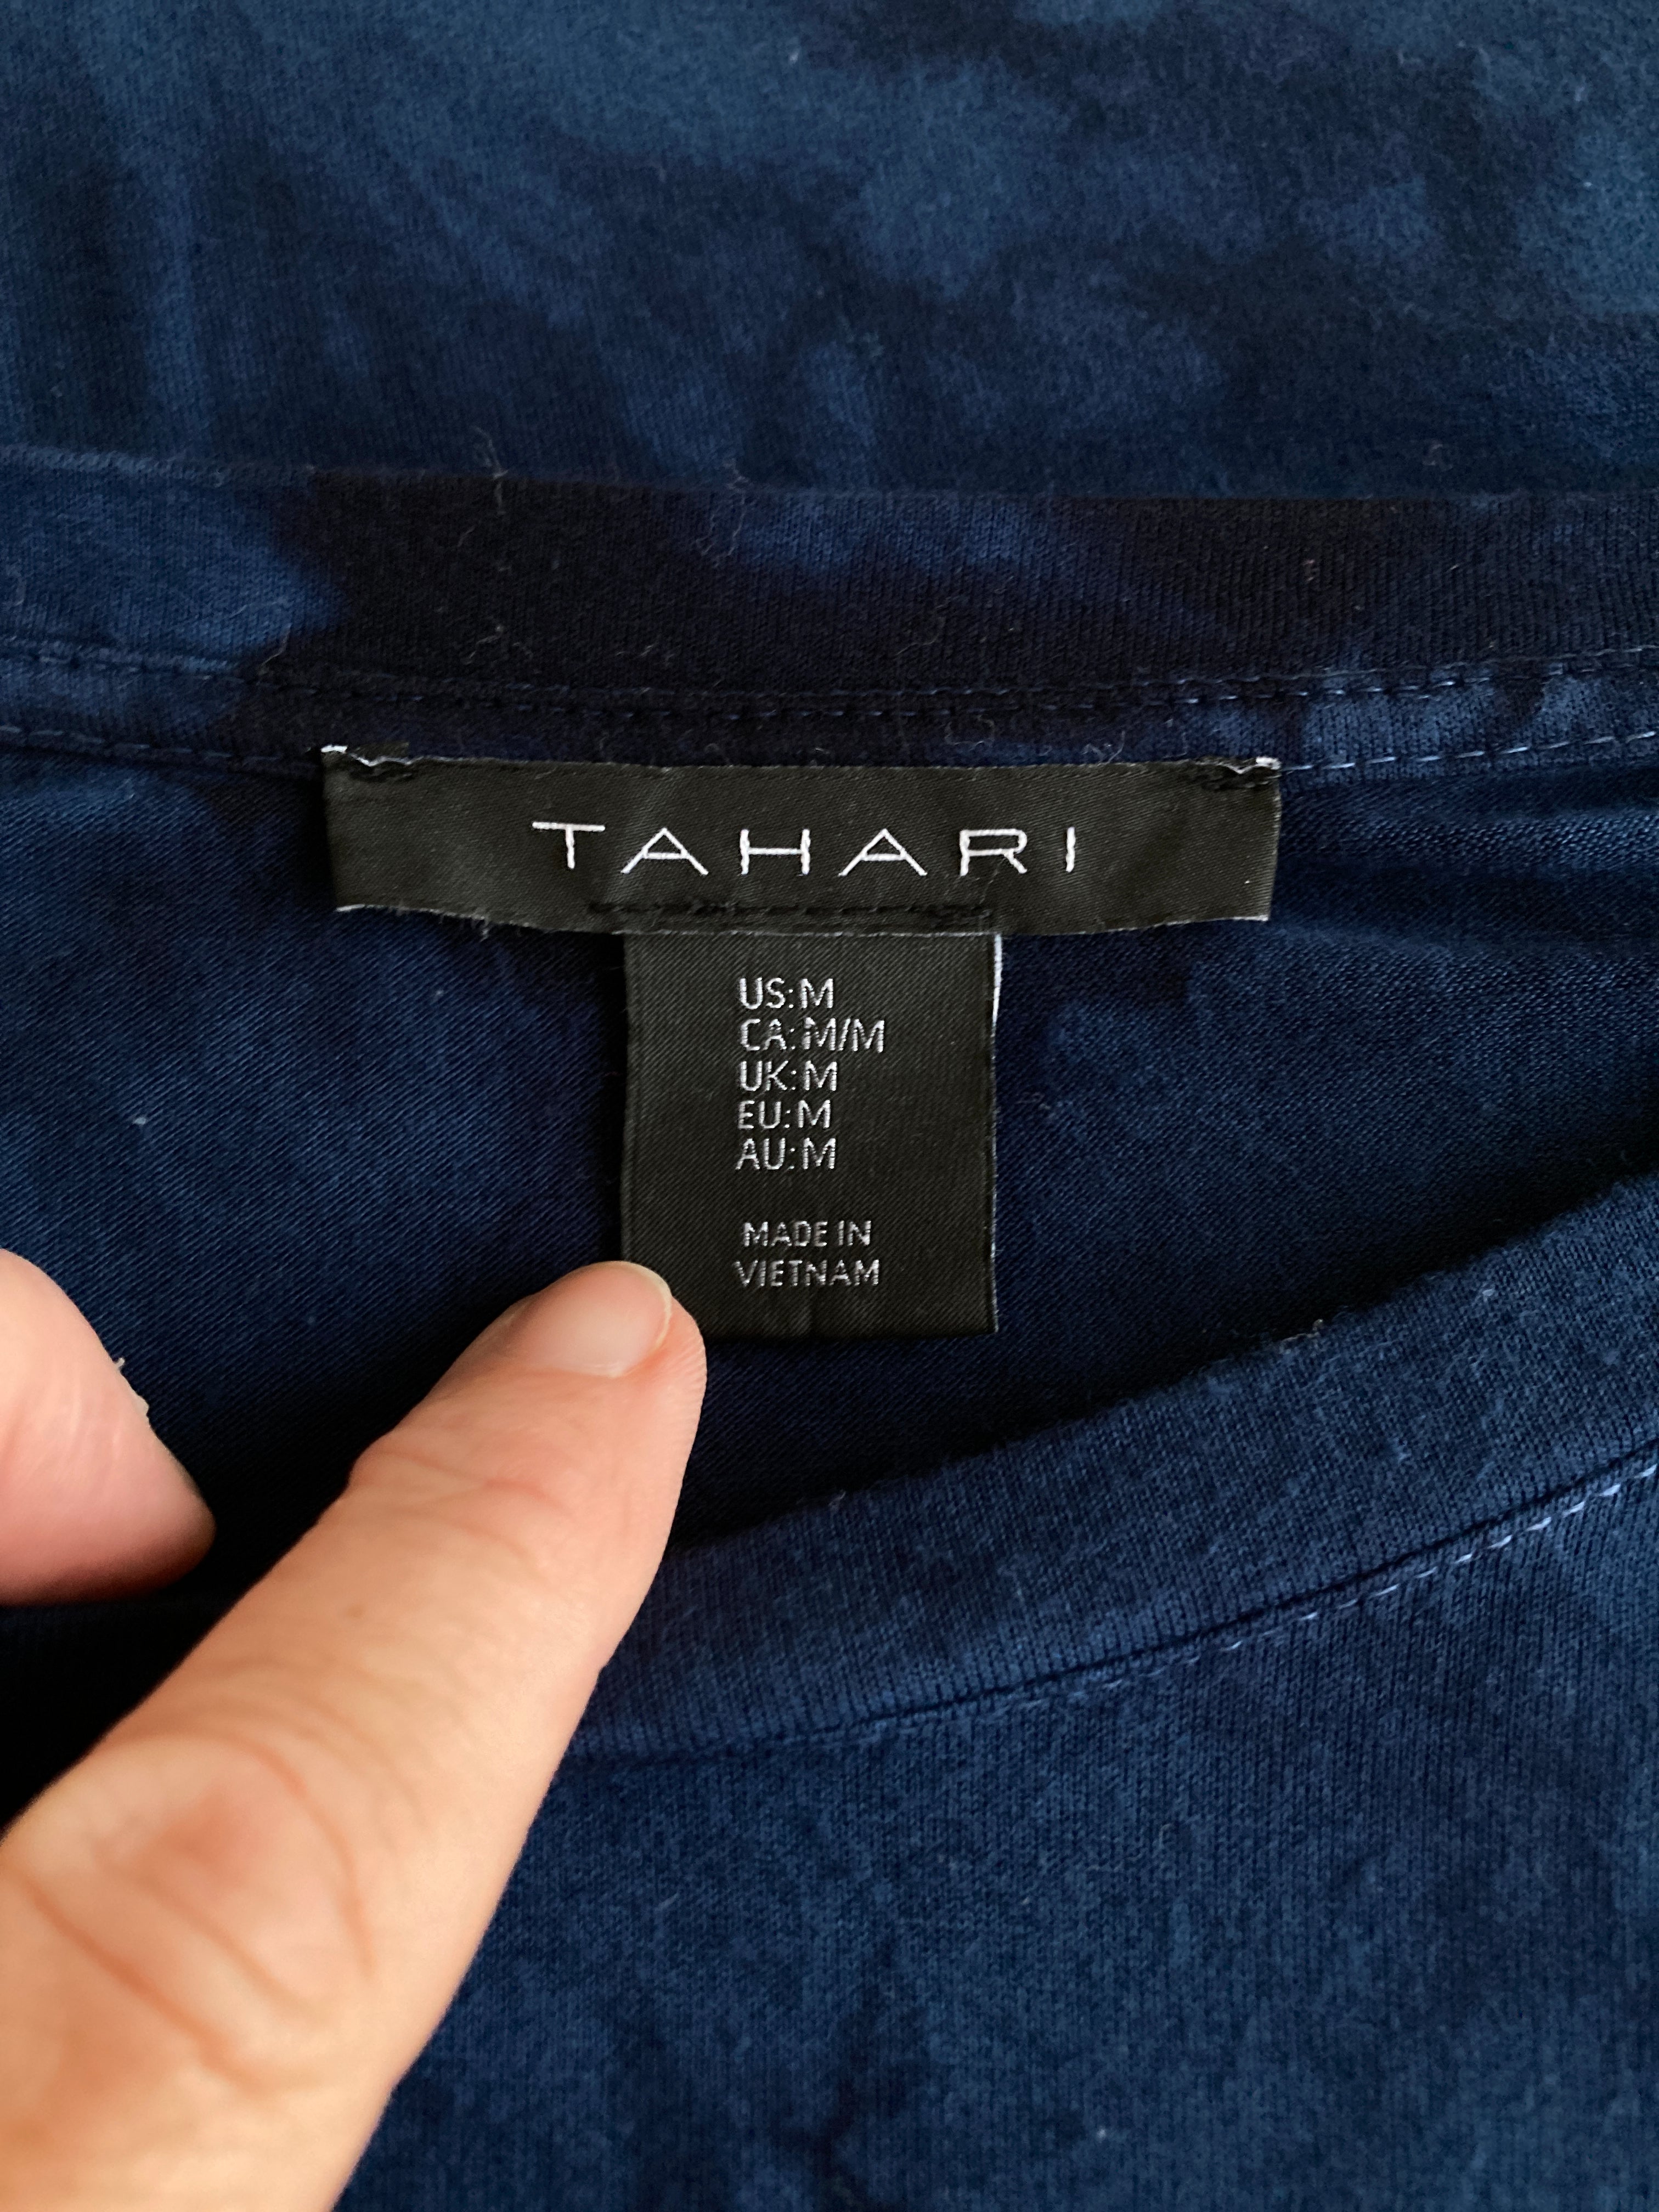 Tahari Blue and Black Tie Dye Print Top, M